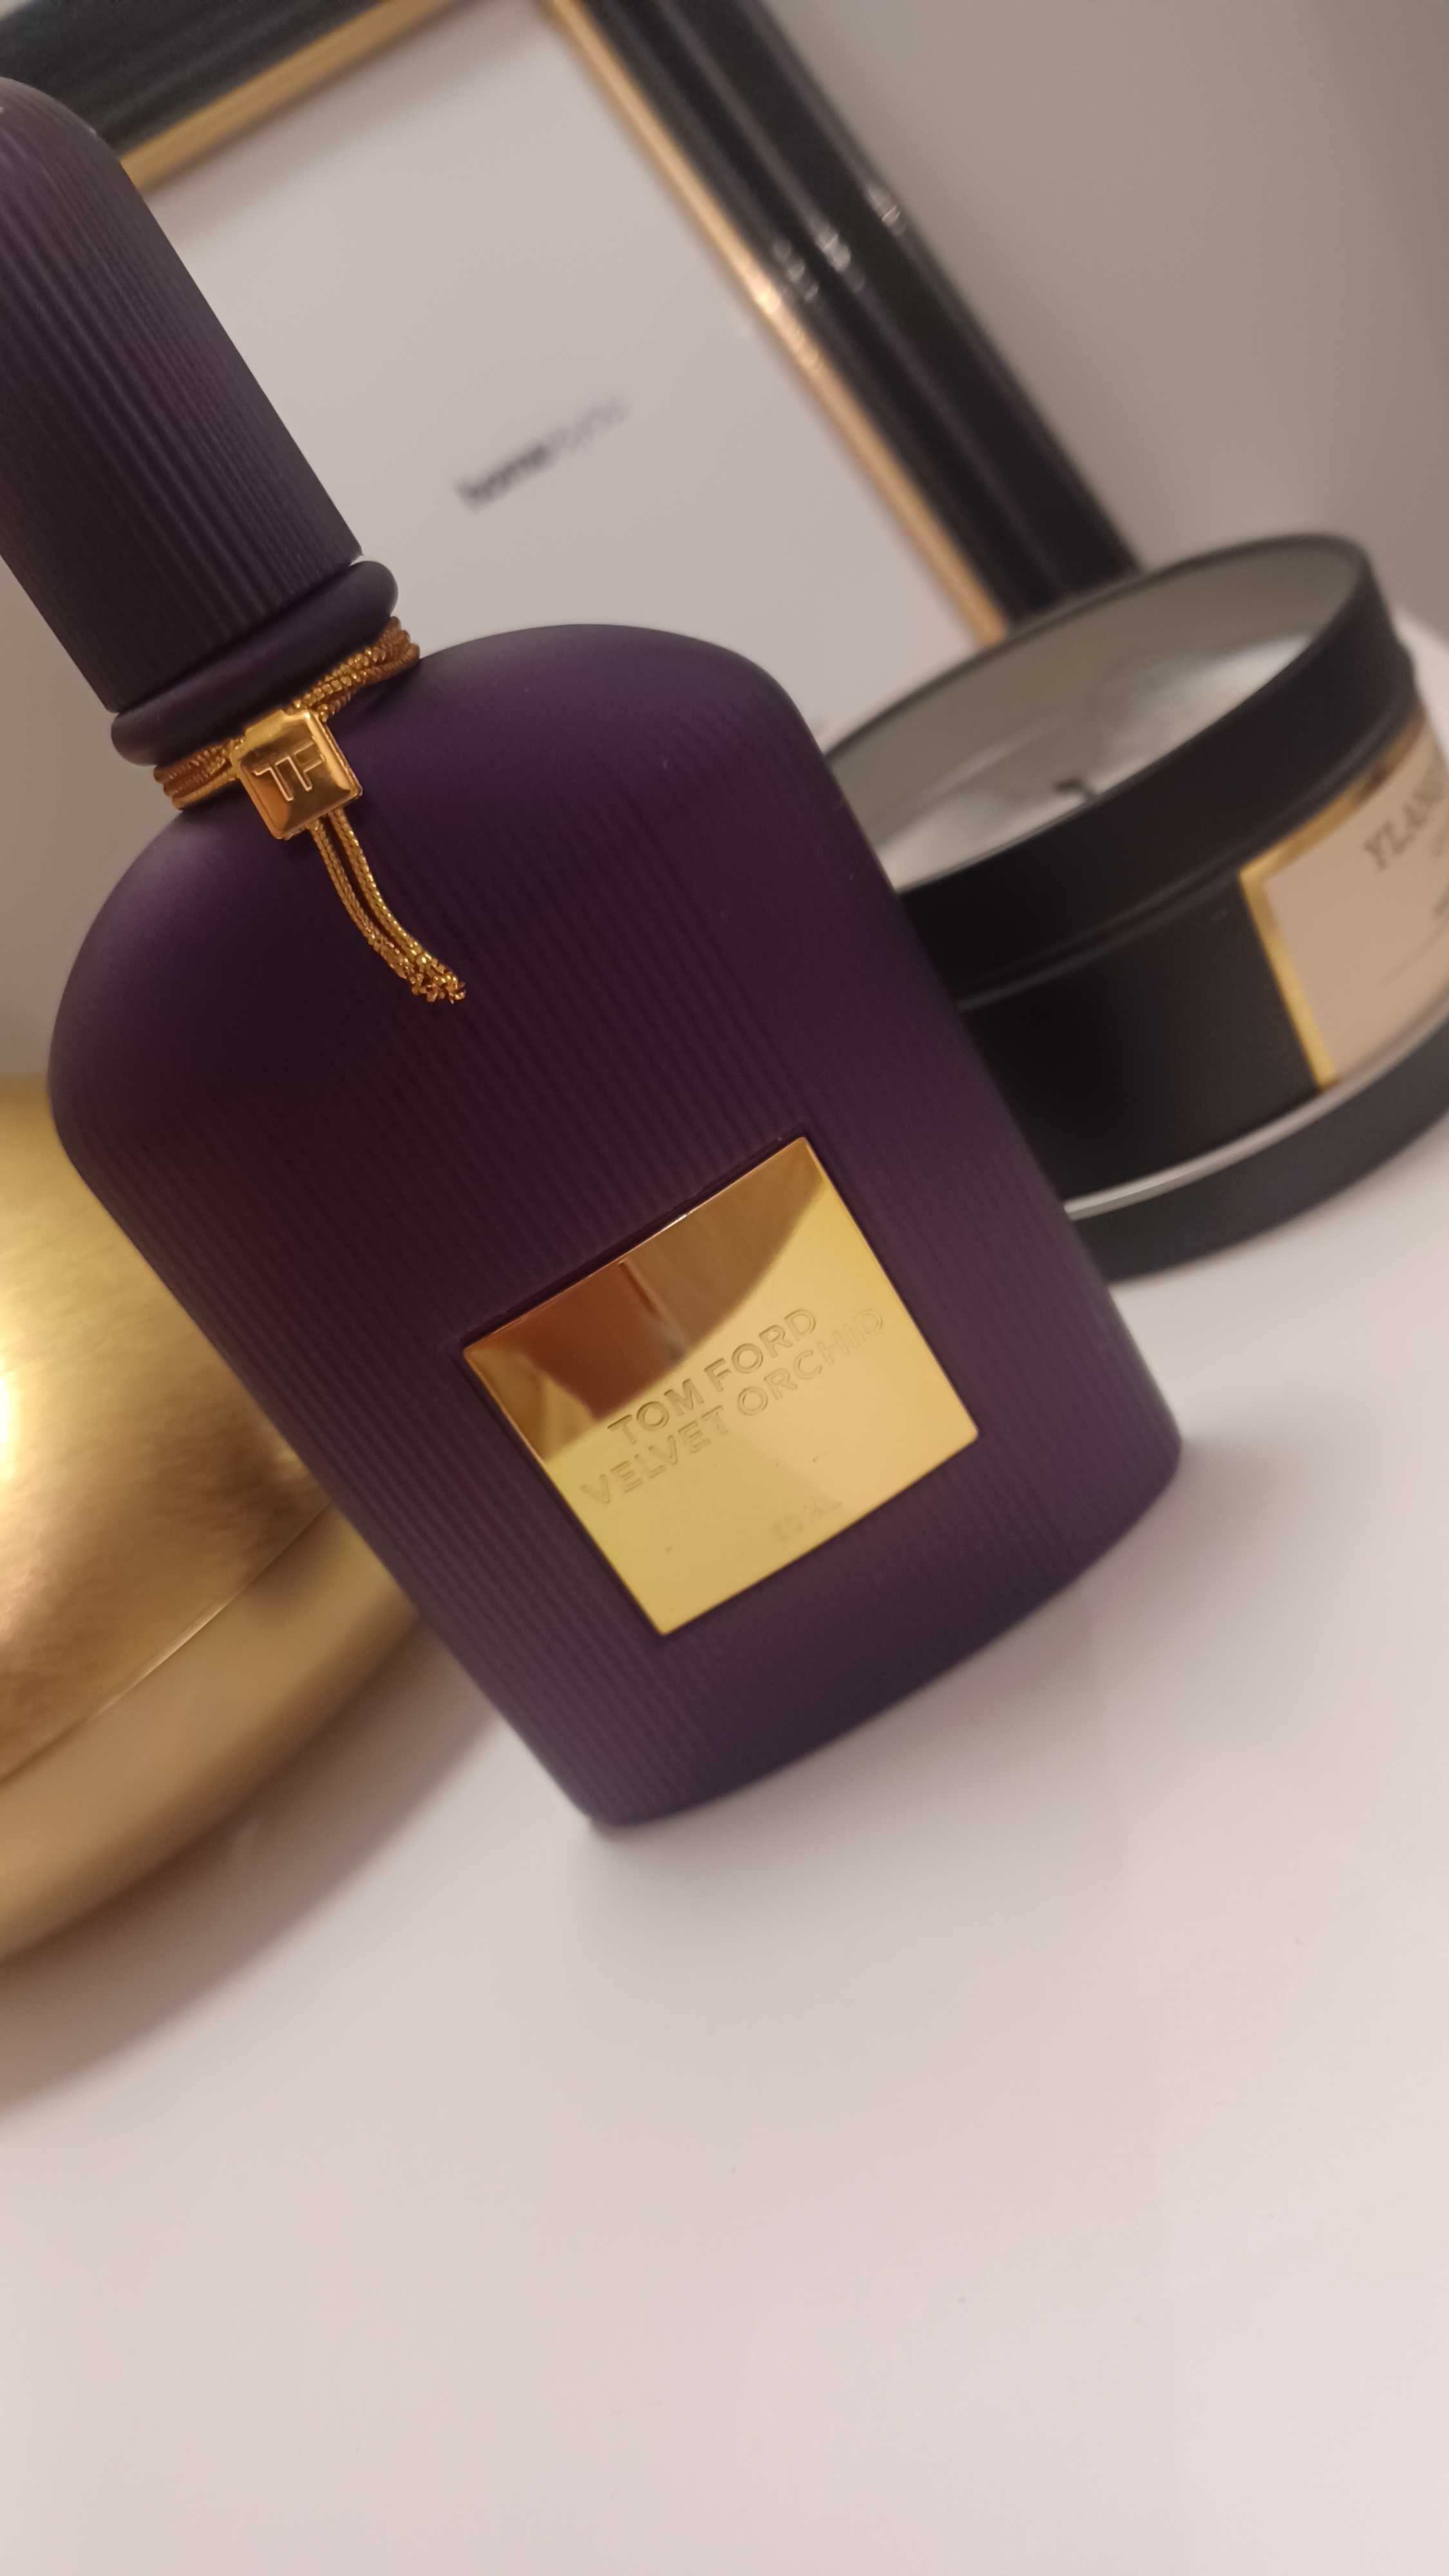 Perfum TOM FORD Velvet orchid 50 ml